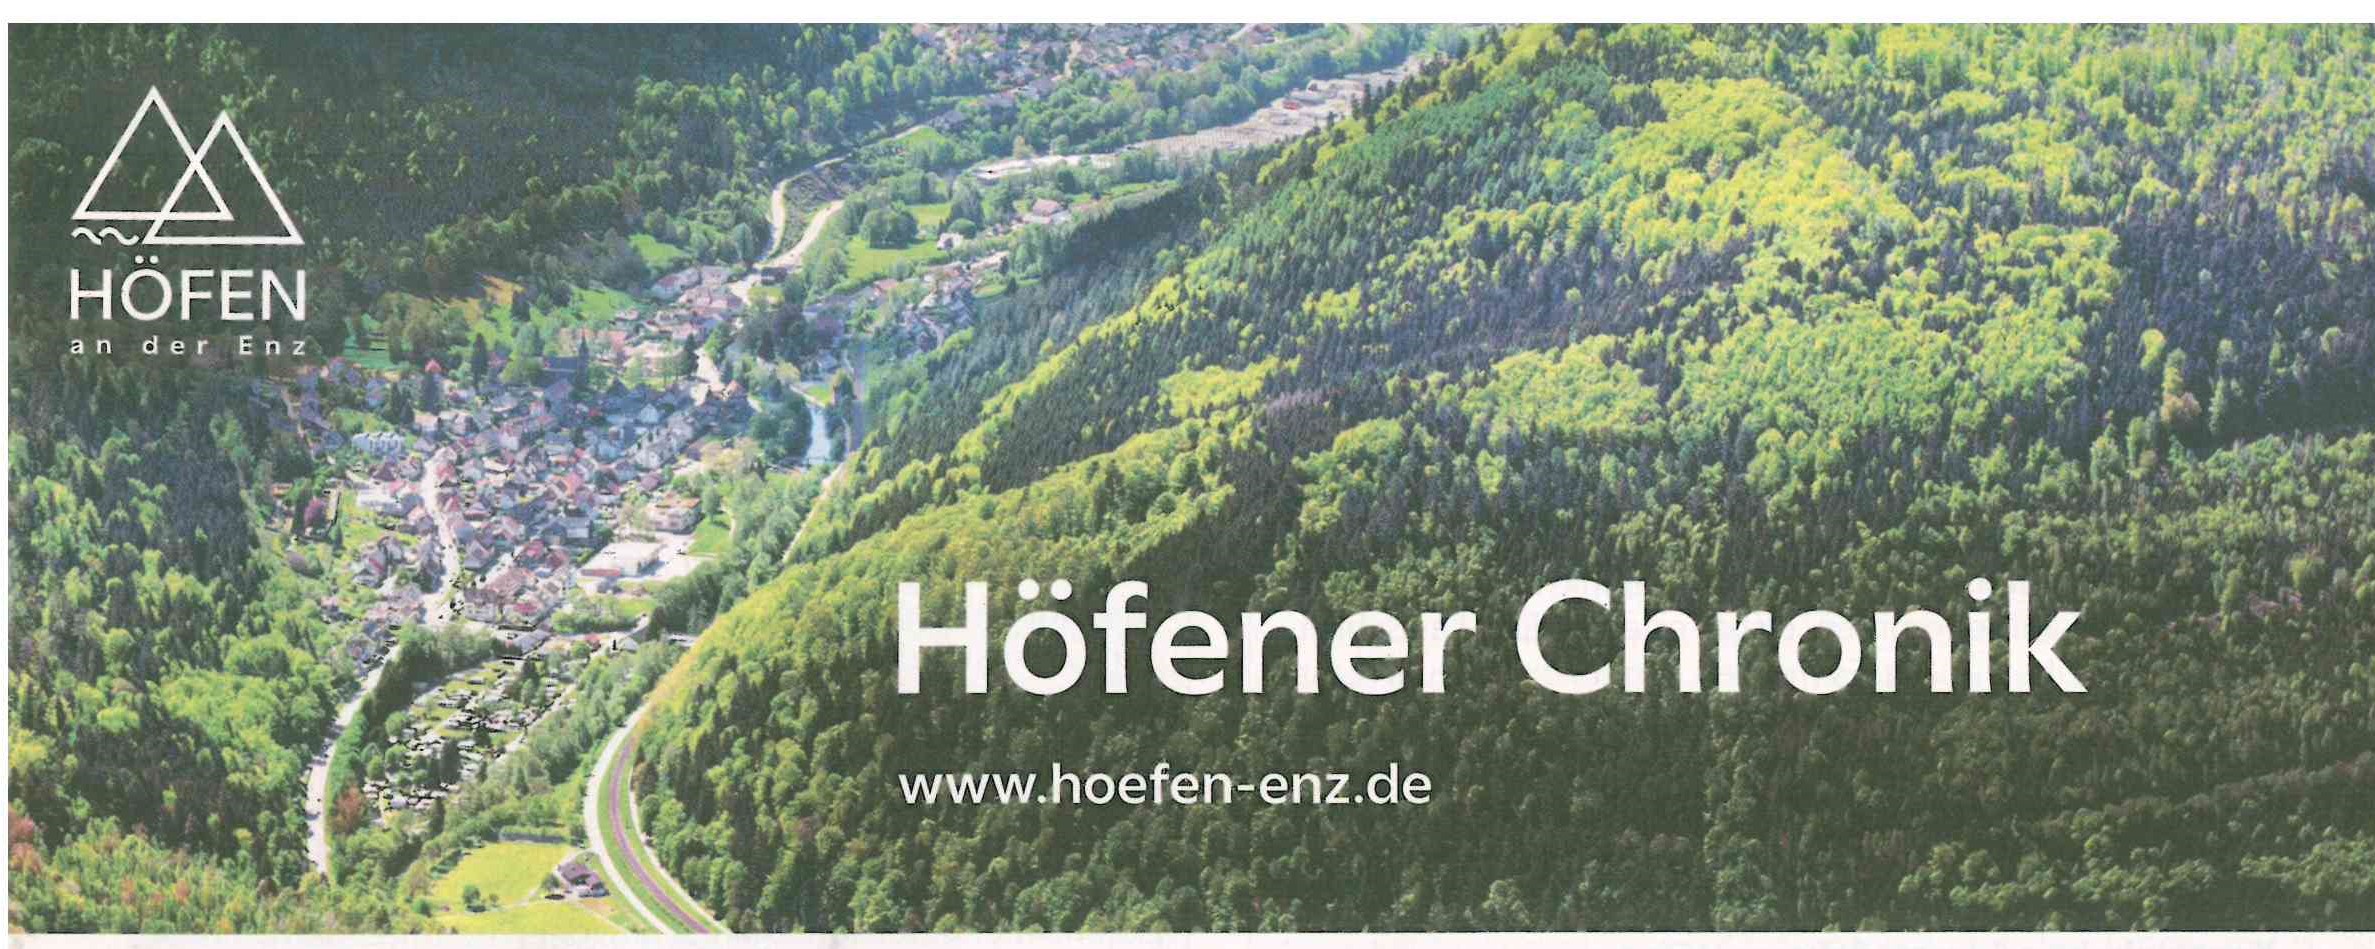 Neues Logo Höfener Chronik